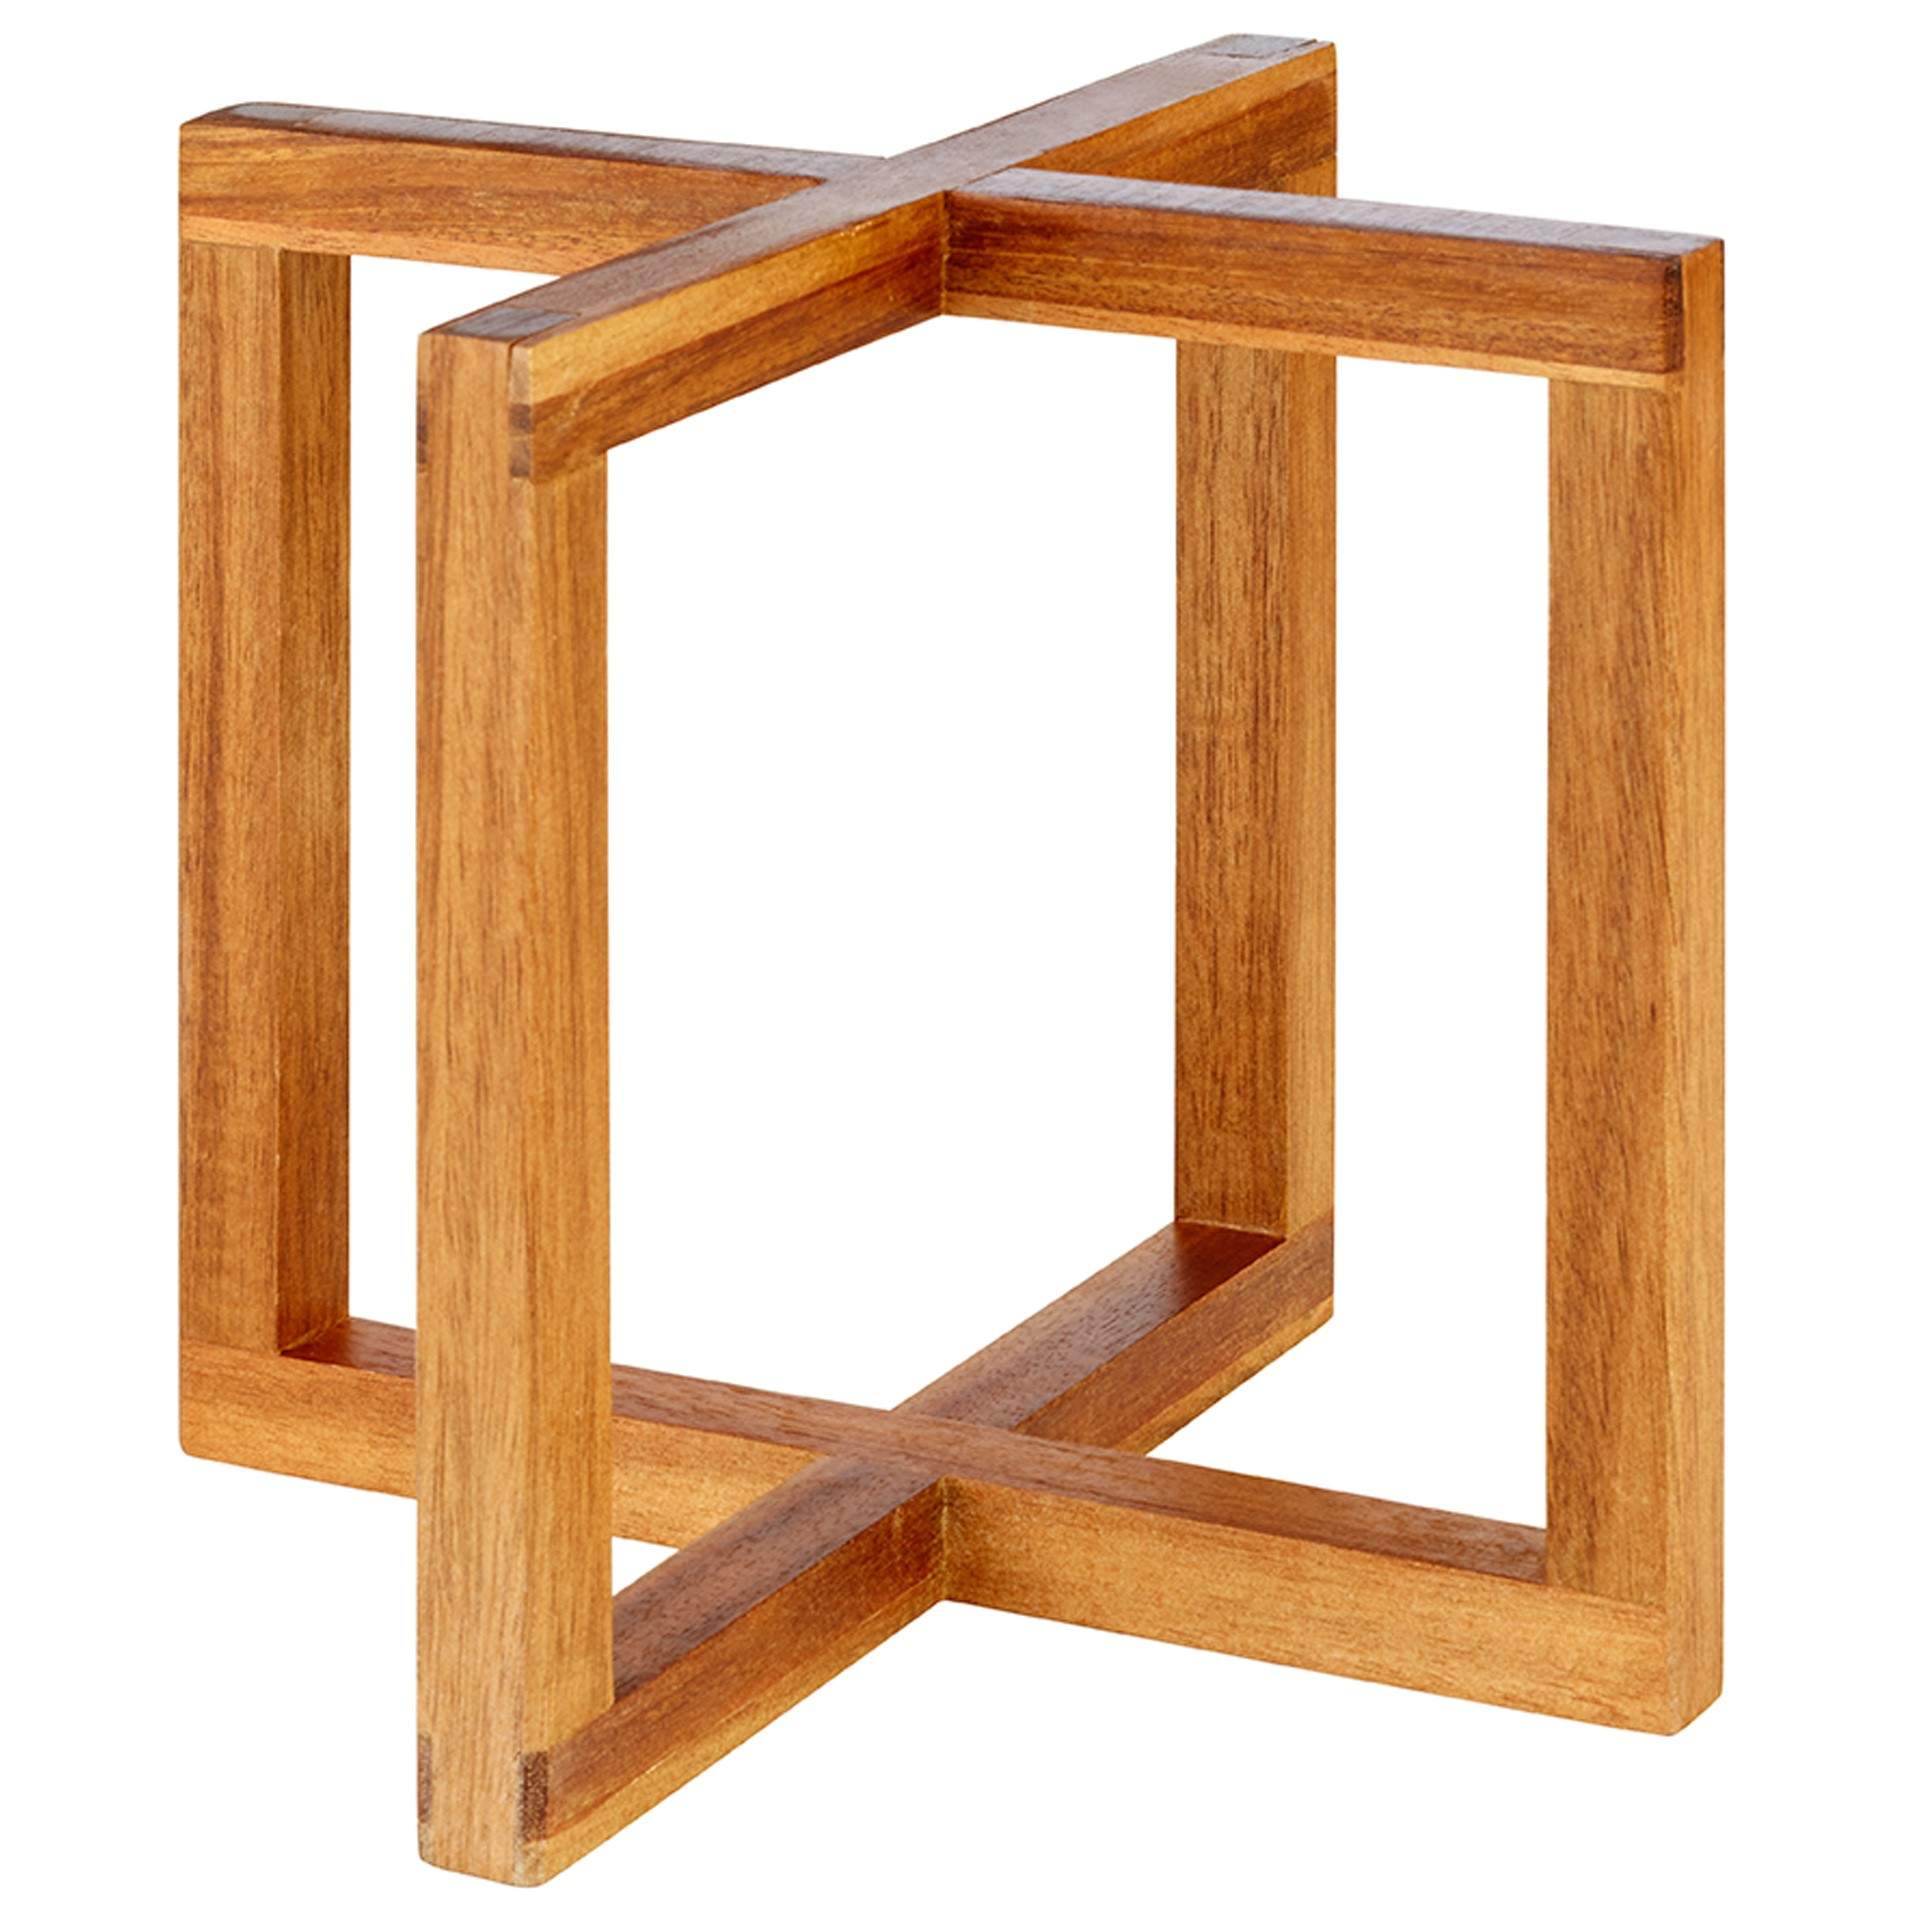 Buffet-Ständer - liegend oder stehend - Serie Wood - natur - Abm. 20 x 20 x 17,5 cm - Akazienholz - 33280-B